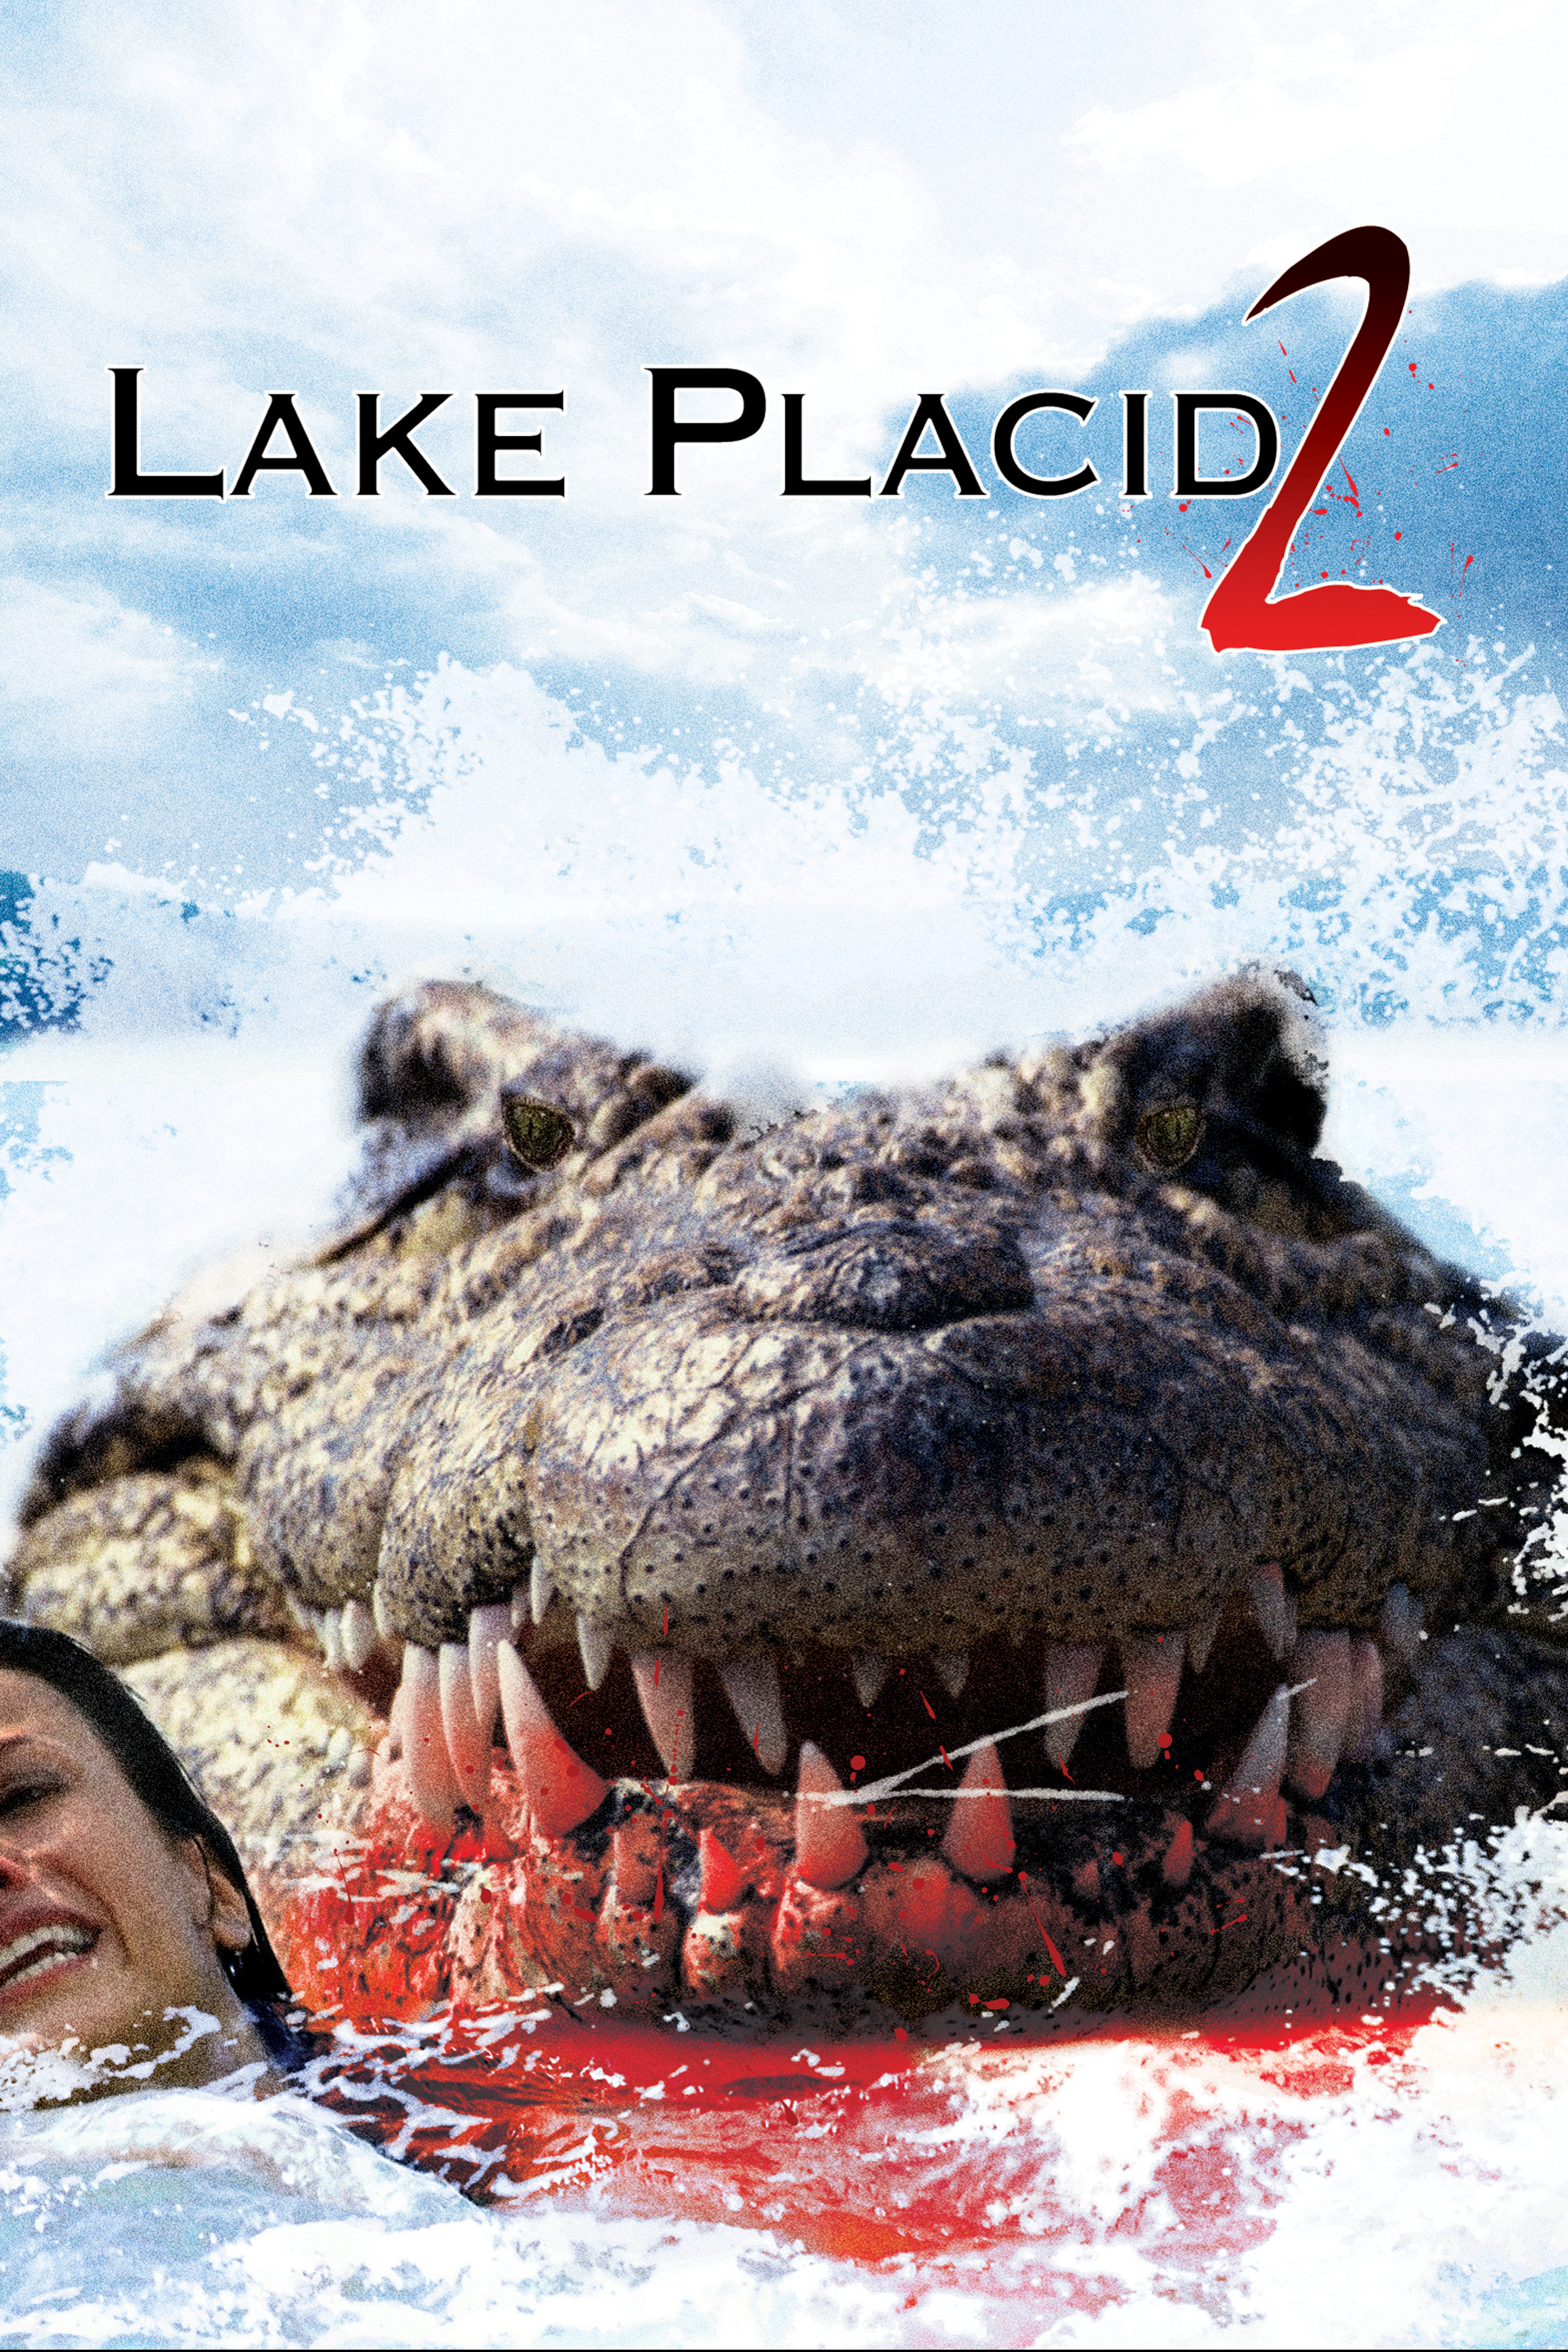 Лейк озеро страха. Озеро страха Лейк Плэсид. Лэйк Плэсид озеро страха 1999 Постер.